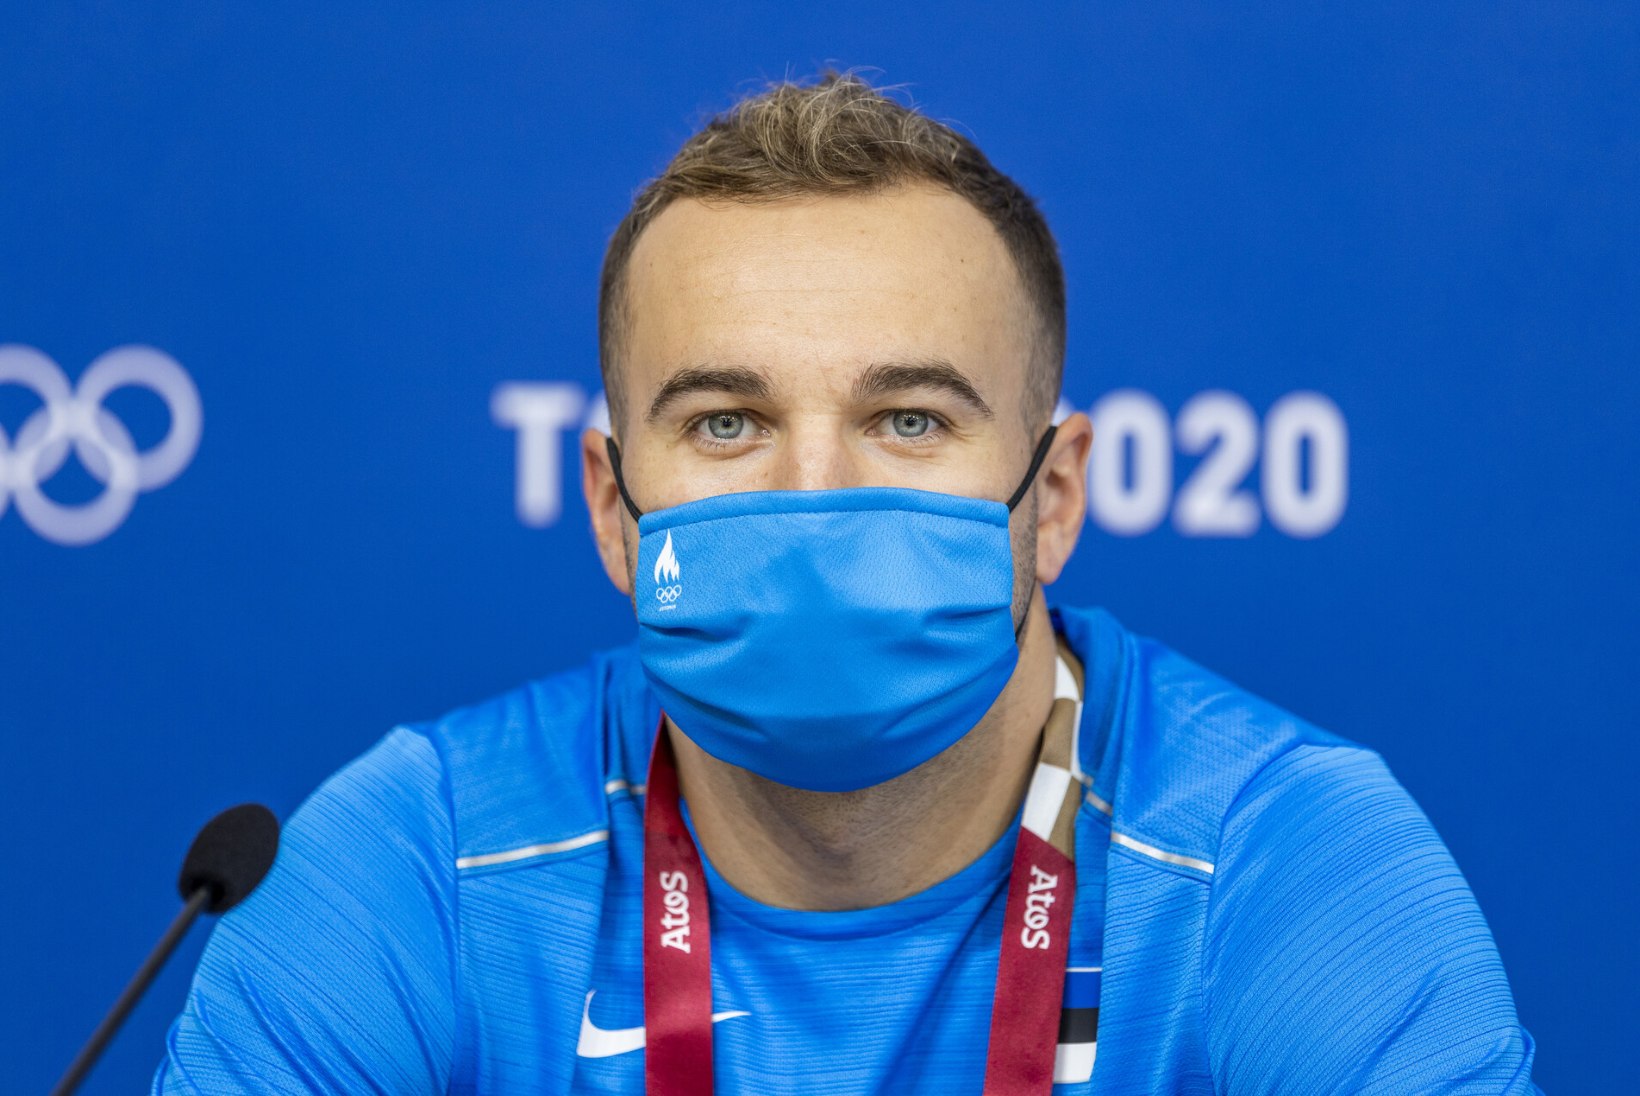 Eesti olümpiakoondislane teeb tippspordiga 26aastaselt lõpparve